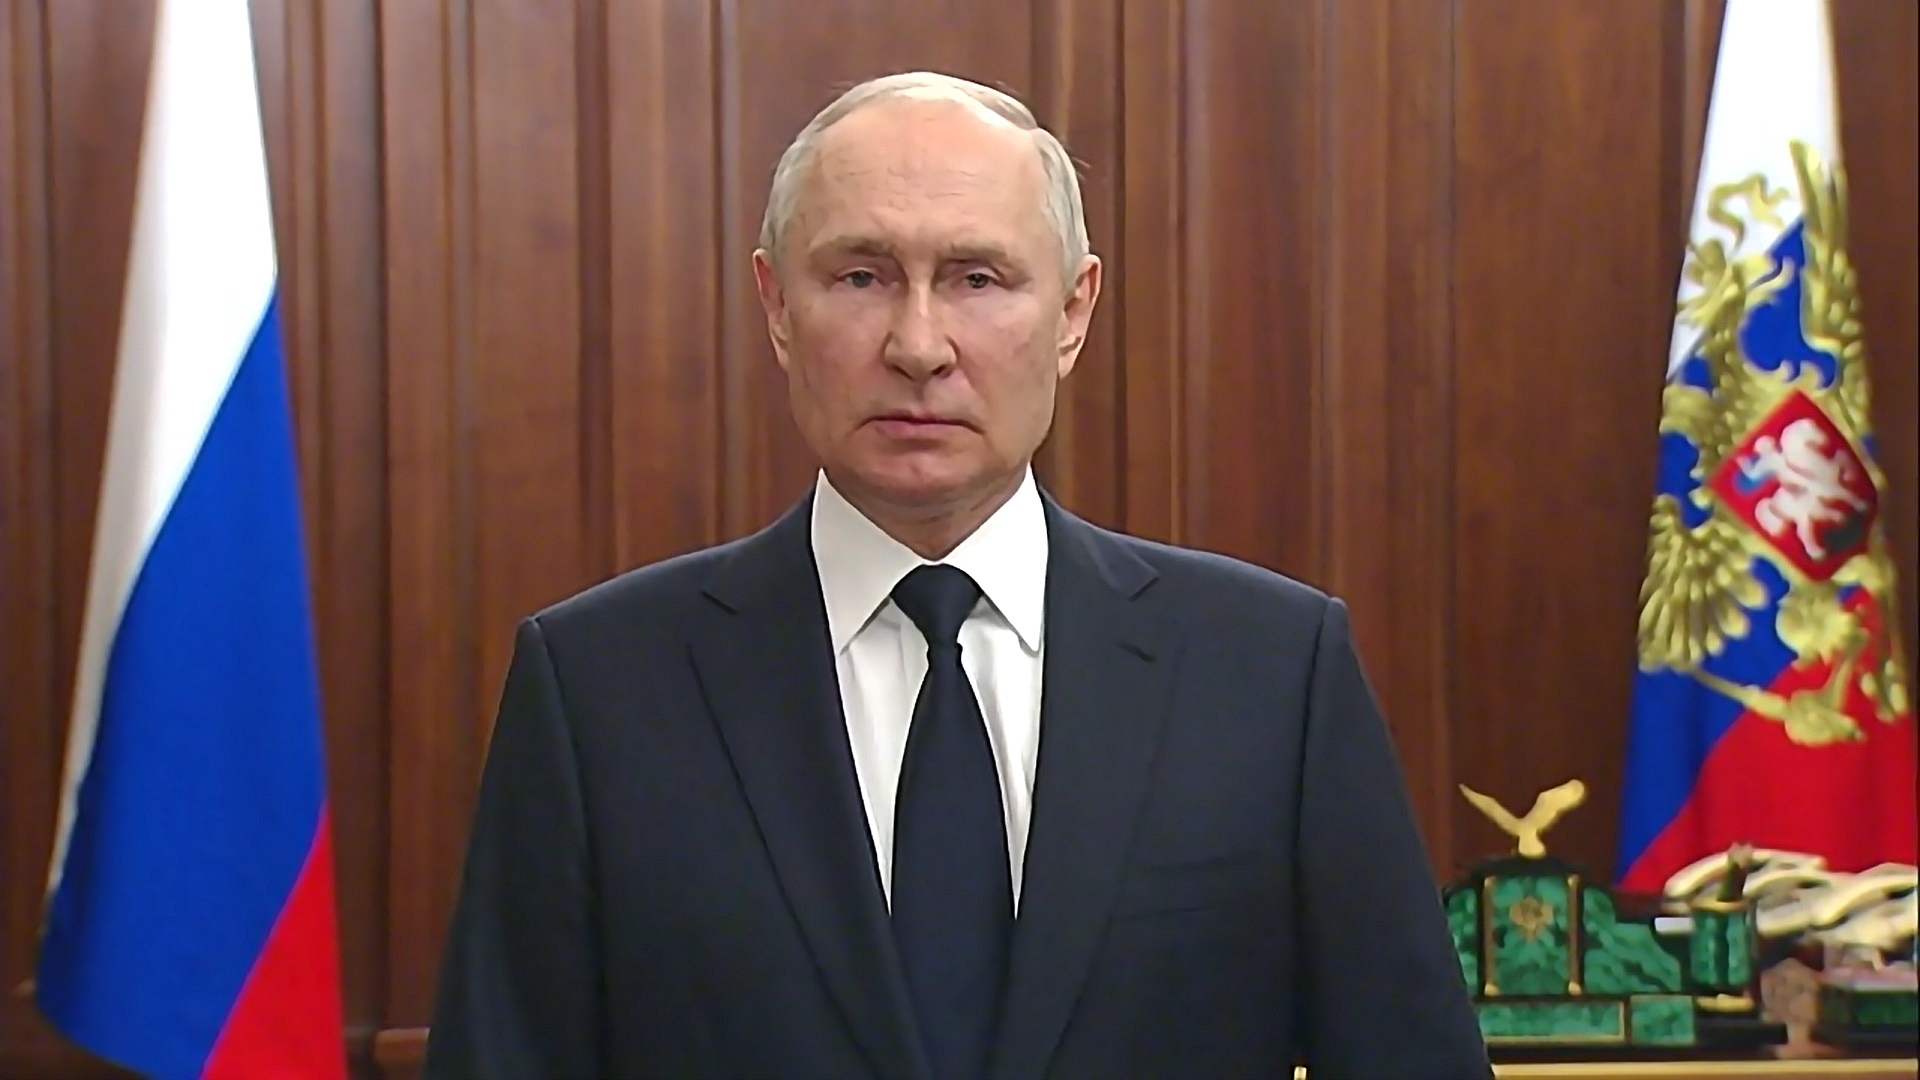 26일(현지시간) 블라디미르 푸틴 러시아 대통령이 TV 연설하고 있다. 2023.6.26 크렘린궁 공보실